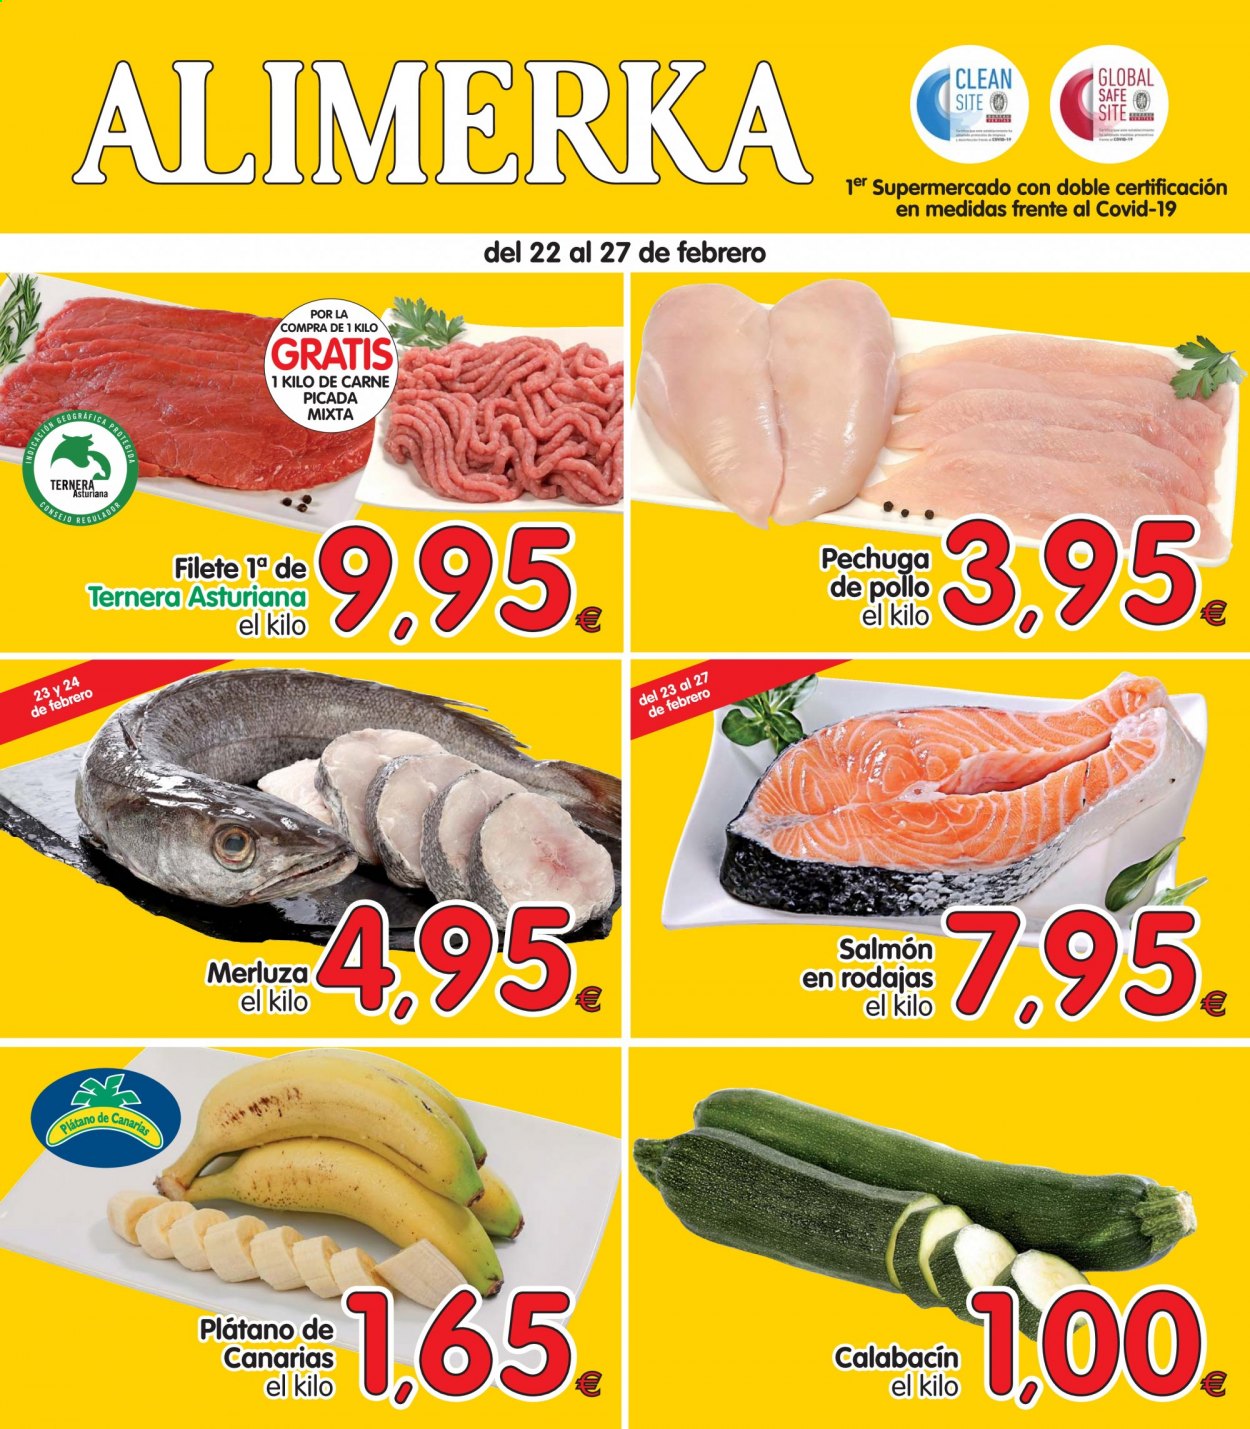 thumbnail - Folleto actual Alimerka - 22/02/21 - 27/02/21 - Ventas - pechuga de pollo, pollo, carne de ternera, carne picada, plátano, calabacín, merluza, salmón. Página 1.